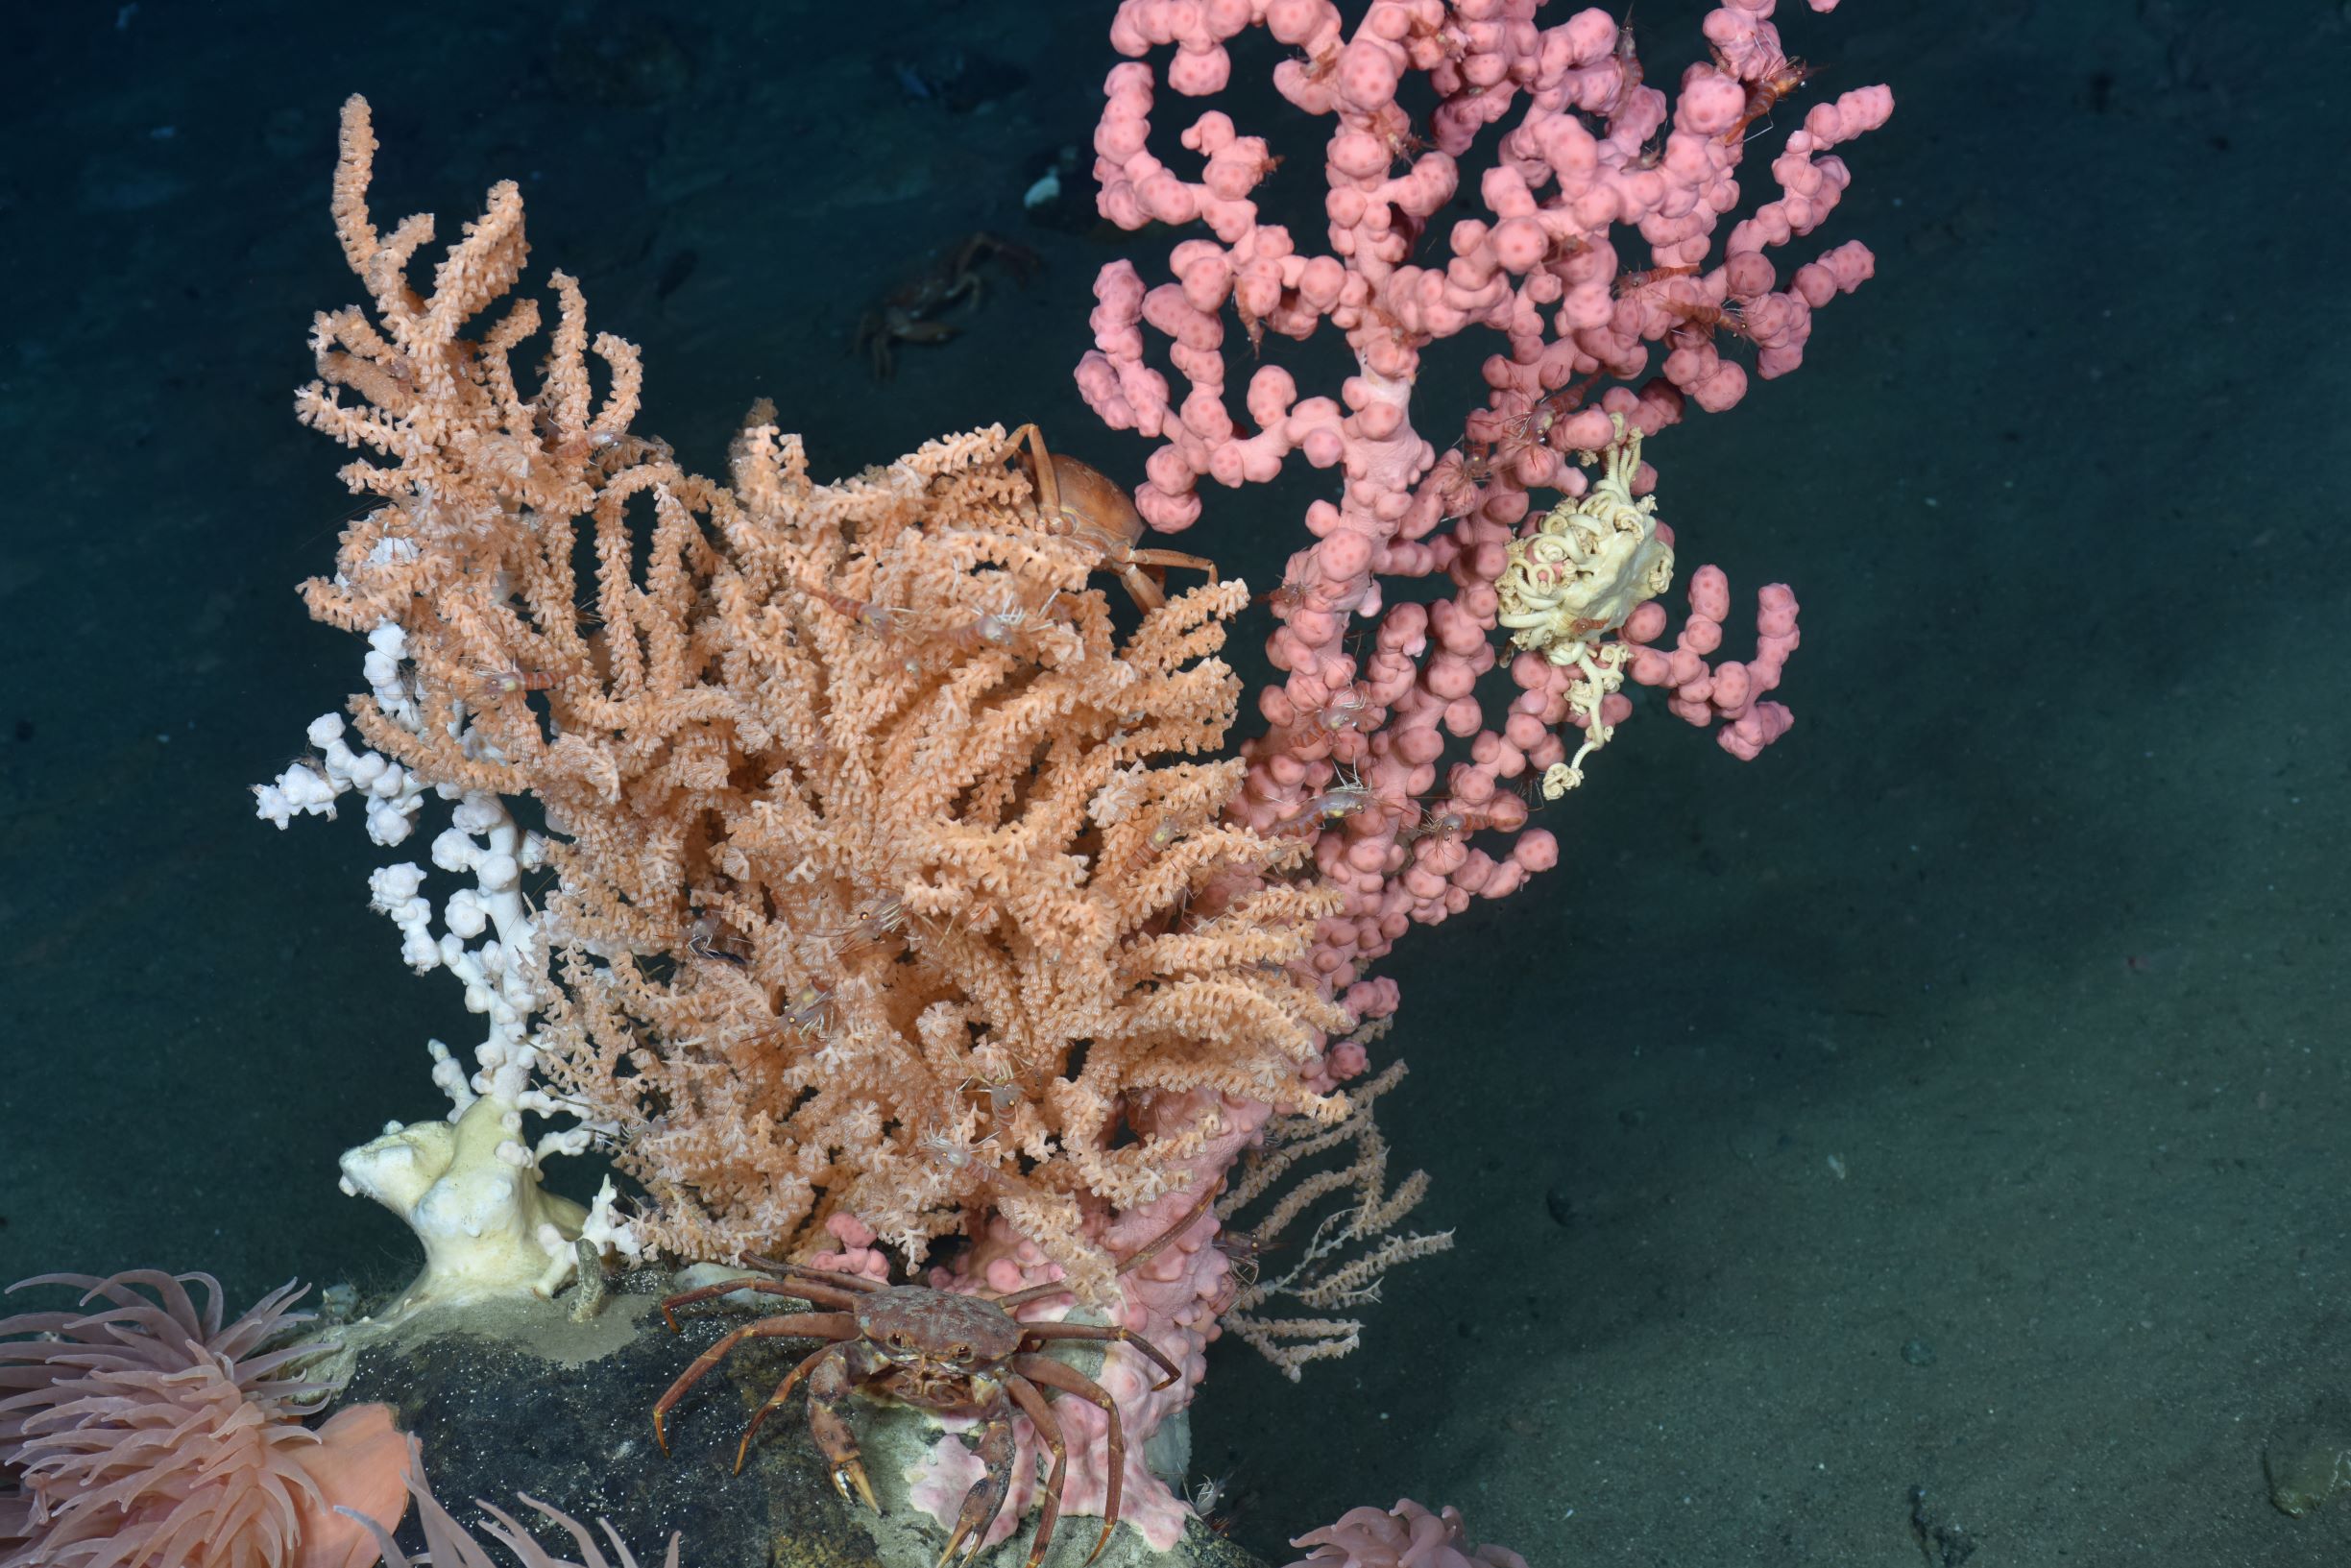 Un crabe à la base d'un peuplement de coraux, dont l'octocorail, Paragorgia arborea, et l'espèce Primnoa resedaeformis.